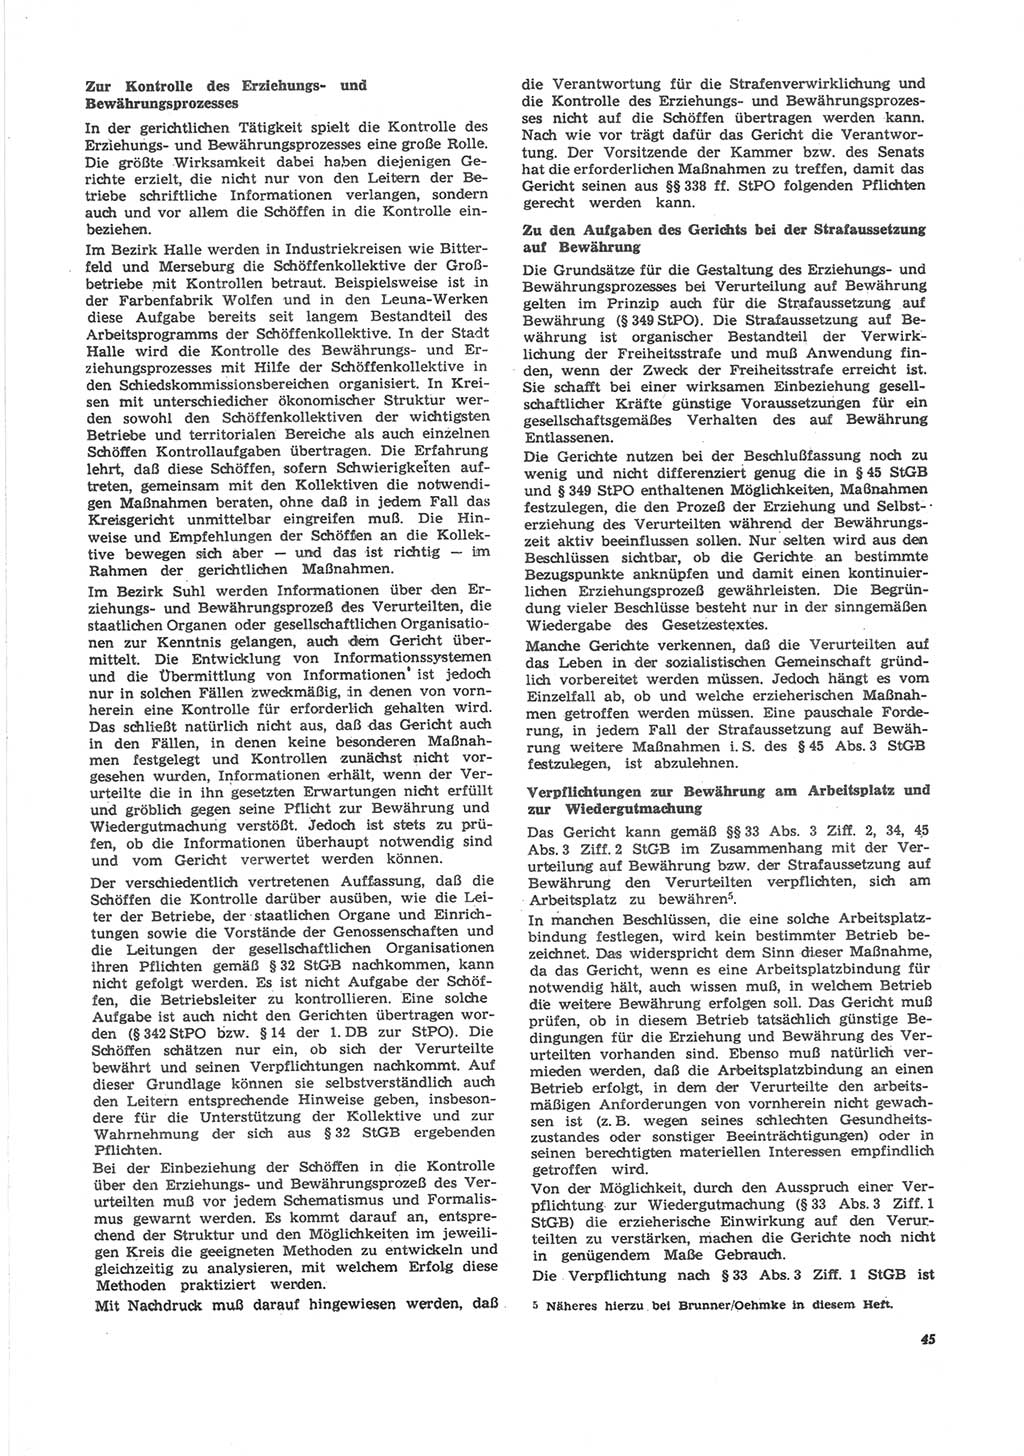 Neue Justiz (NJ), Zeitschrift für Recht und Rechtswissenschaft [Deutsche Demokratische Republik (DDR)], 24. Jahrgang 1970, Seite 45 (NJ DDR 1970, S. 45)